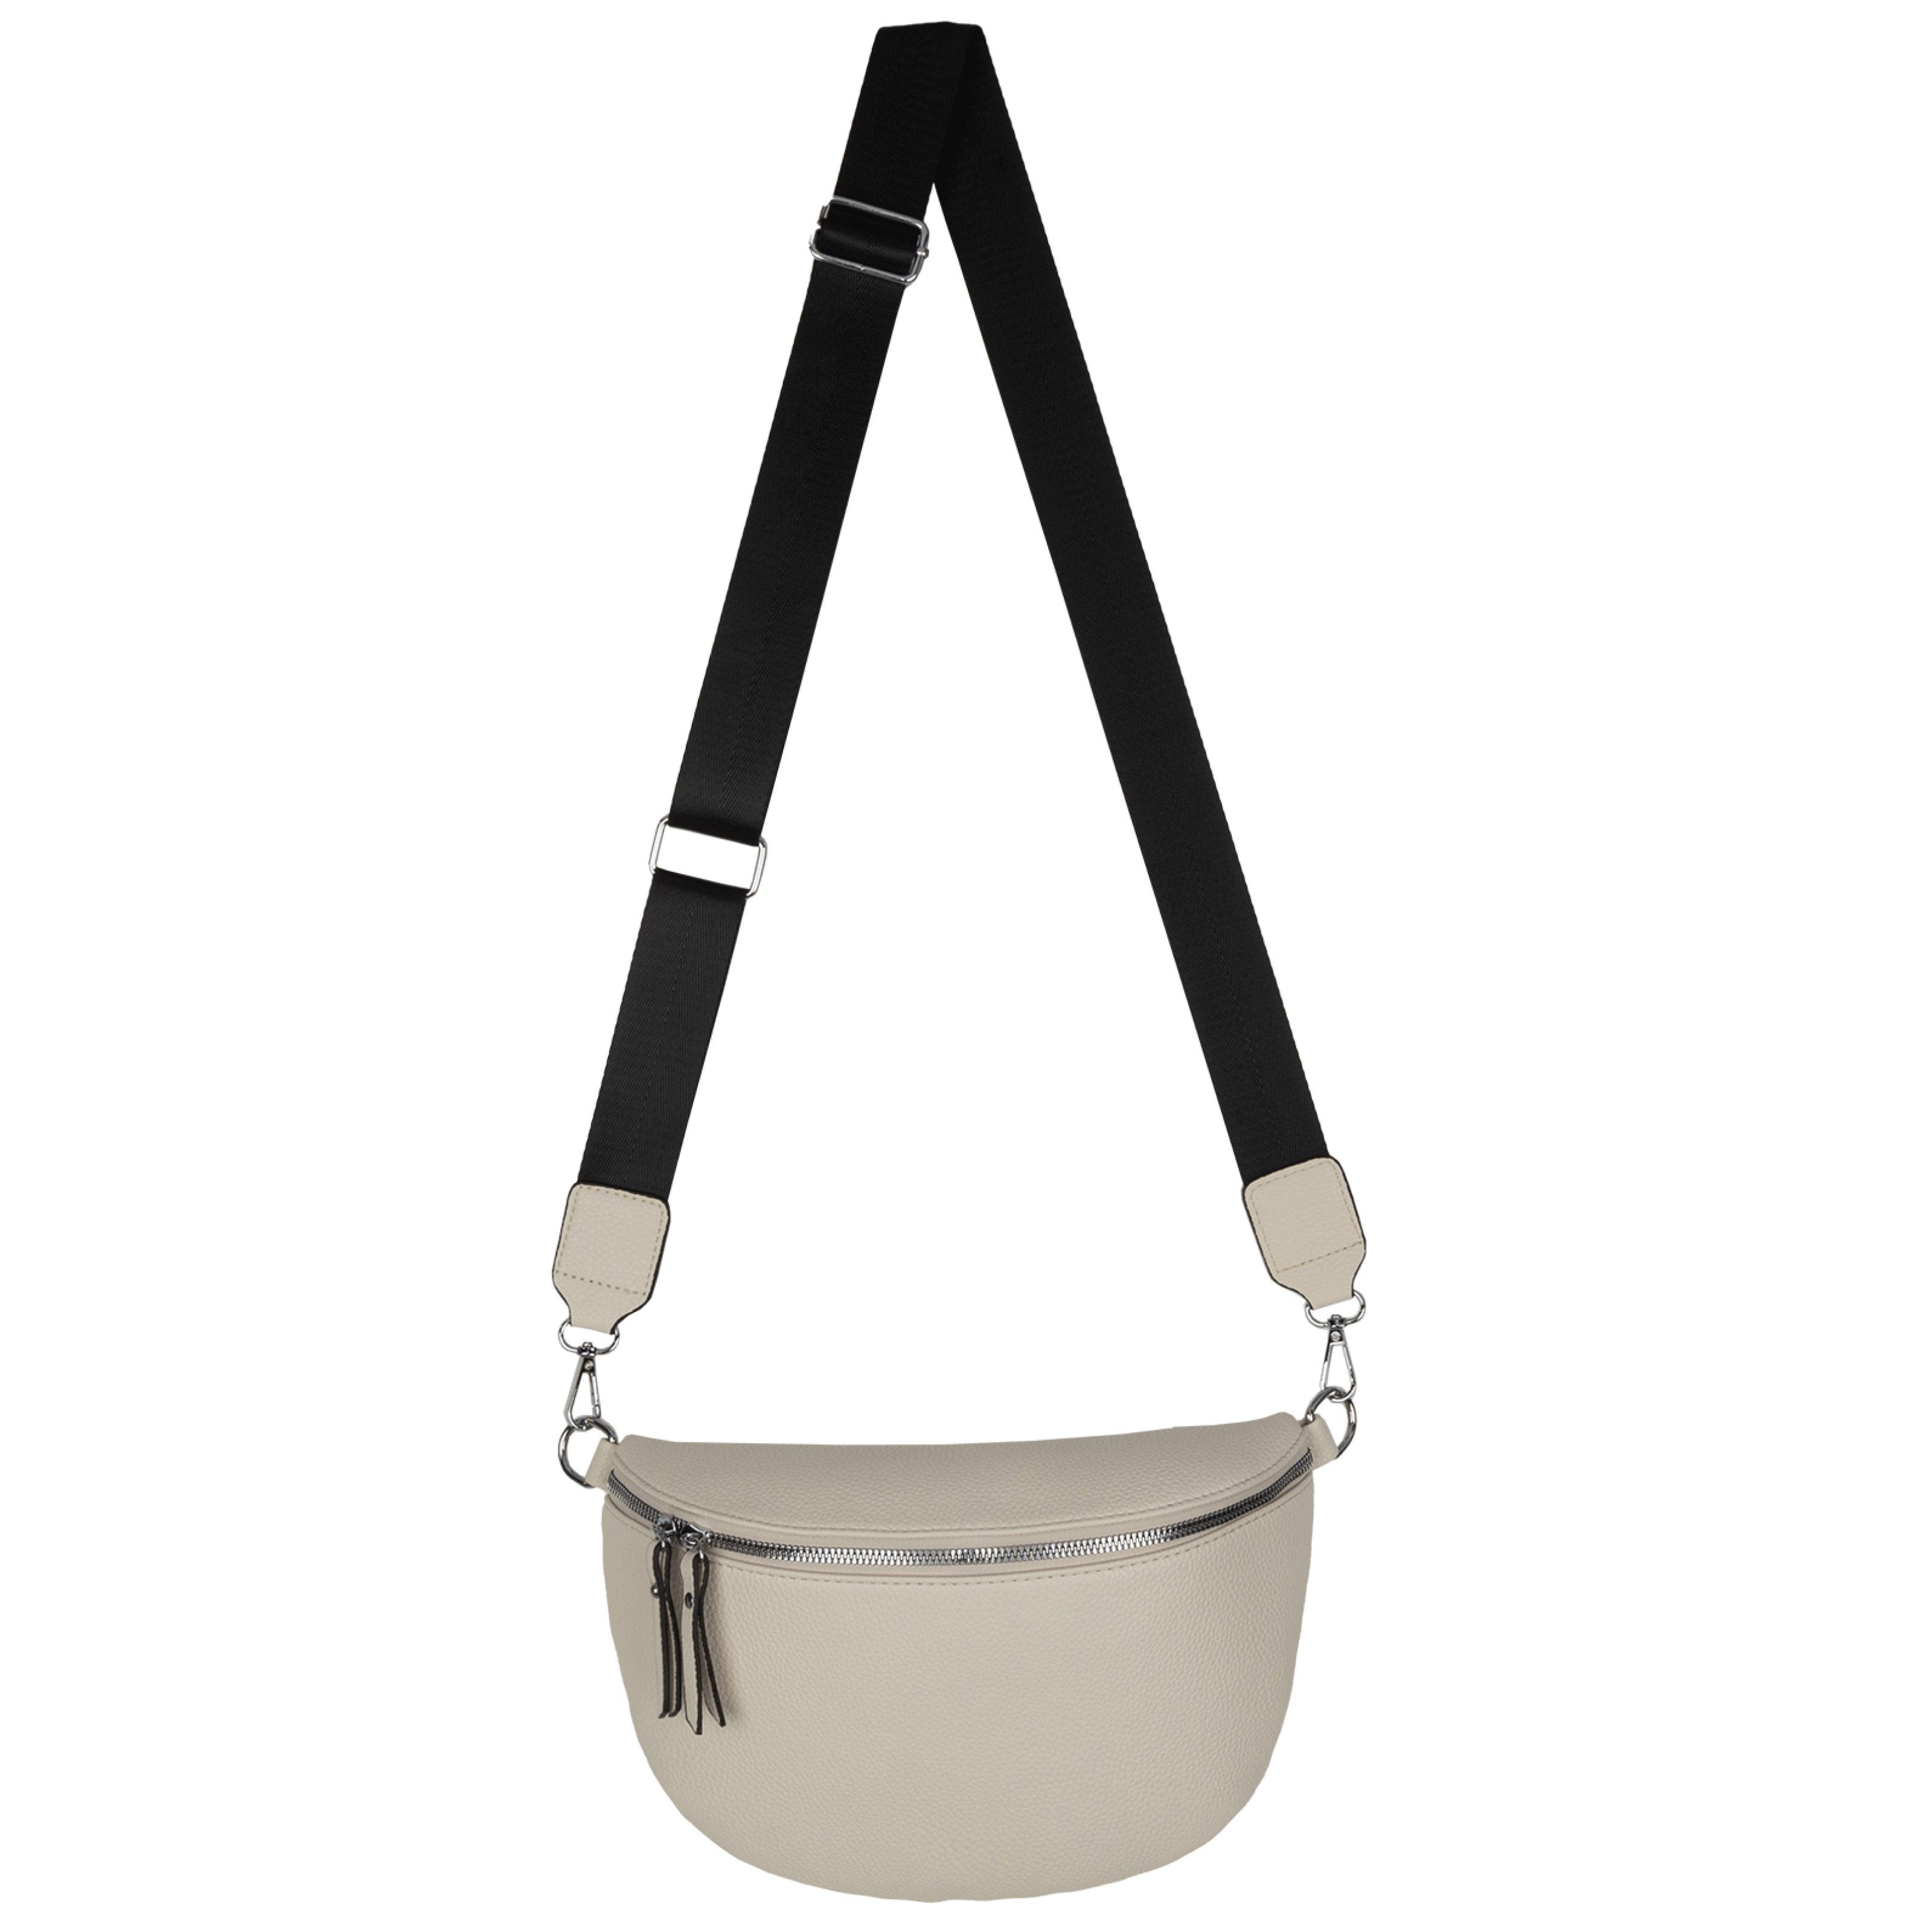 EAAKIE Gürteltasche Bauchtasche XL Umhängetasche Crossbody-Bag Hüfttasche Kunstleder Italy, als Schultertasche, CrossOver, Umhängetasche tragbar BEIGE